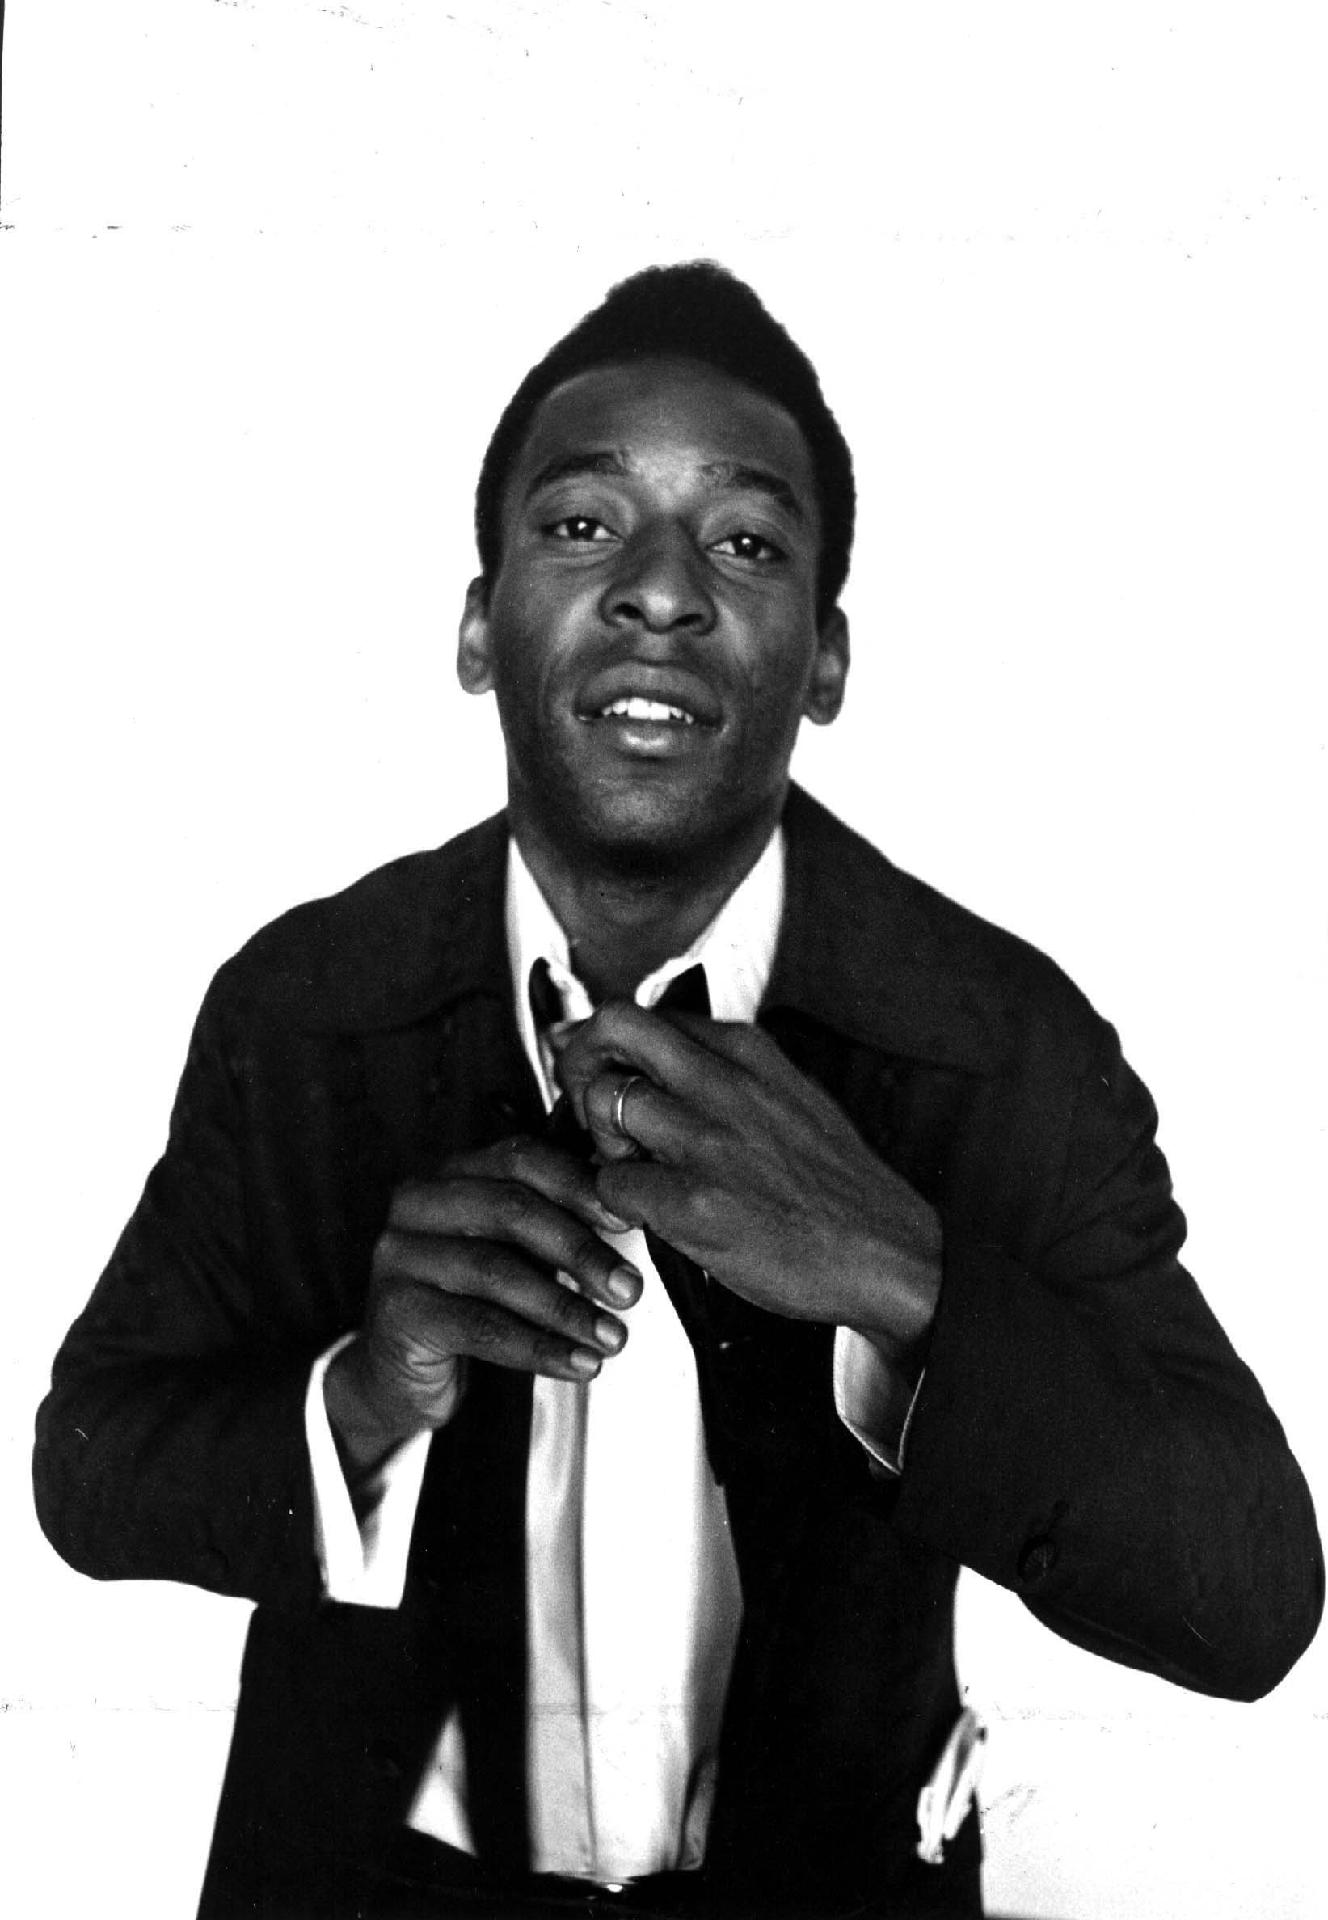 02/10/1974 - Na foto, Pelé arruma a gravata. Com um futebol vistoso dentro de campo, o craque também sempre se preocupou com a elegância fora dos gramados. - Domicio Pinheiro/Estadão Conteúdo